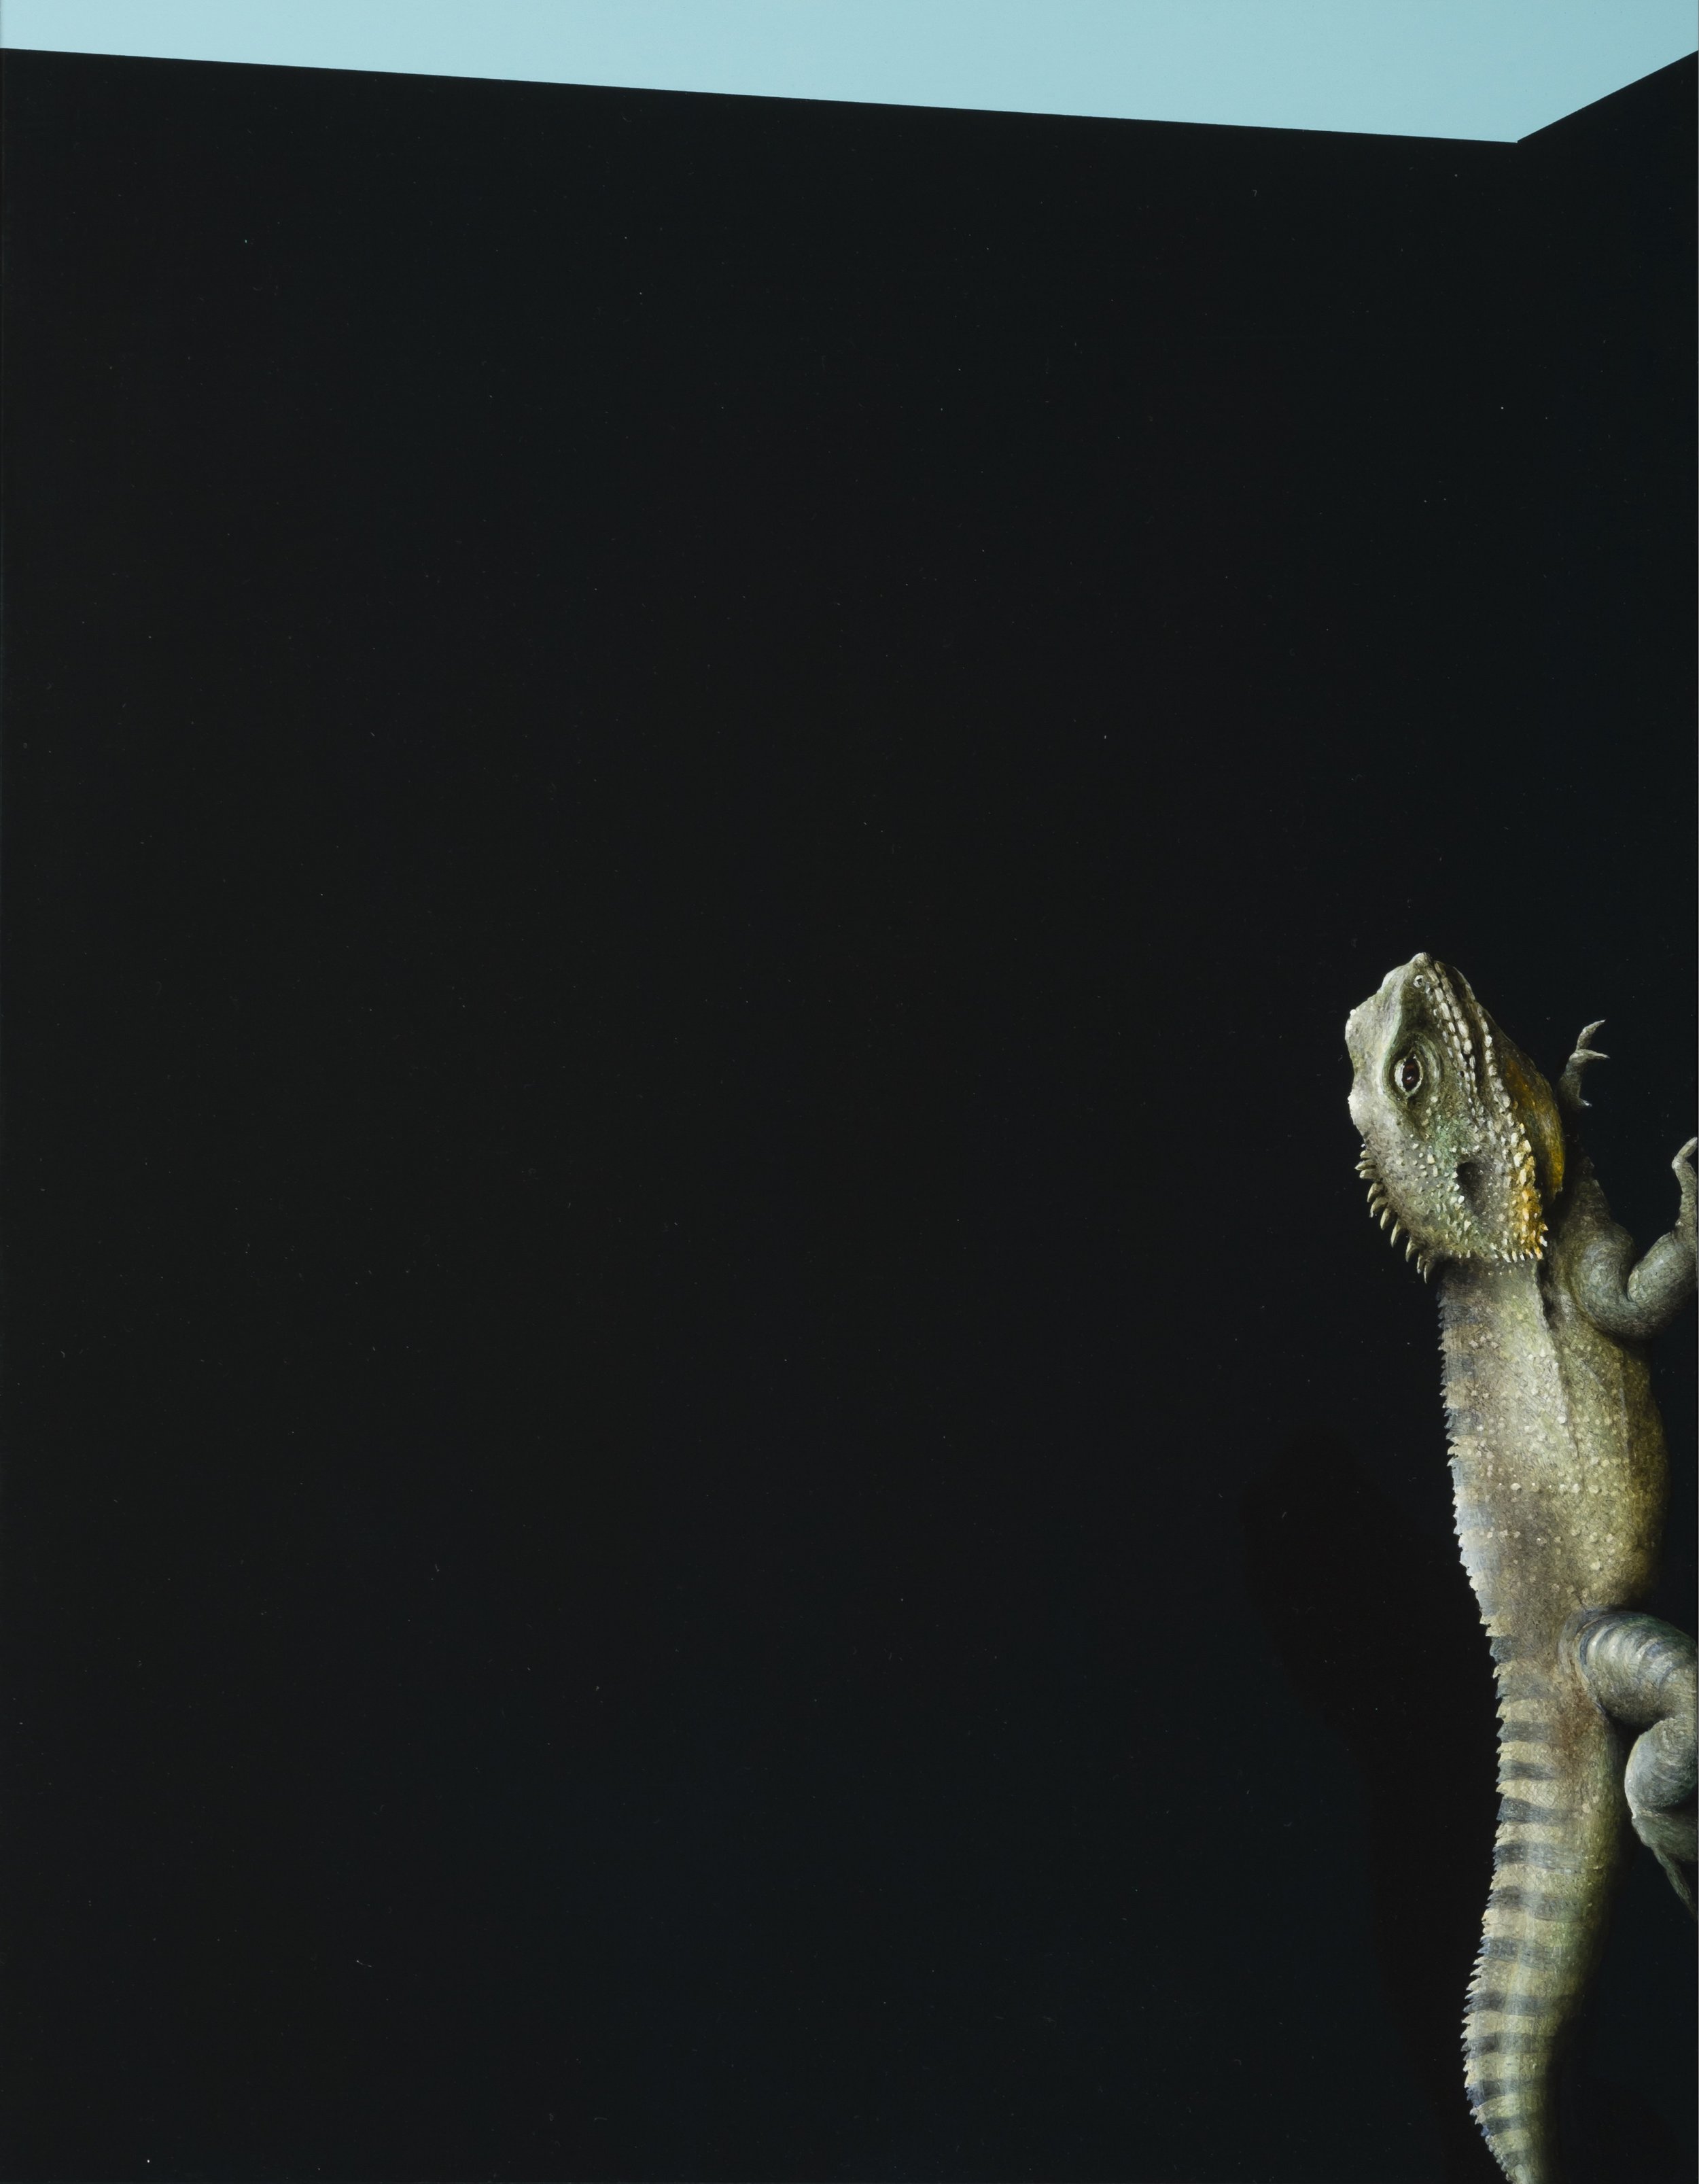  Jarek Wojcik,&nbsp; Spaces and Things 03 , 2015, acrylic on clayboard, 45 x 35cm 